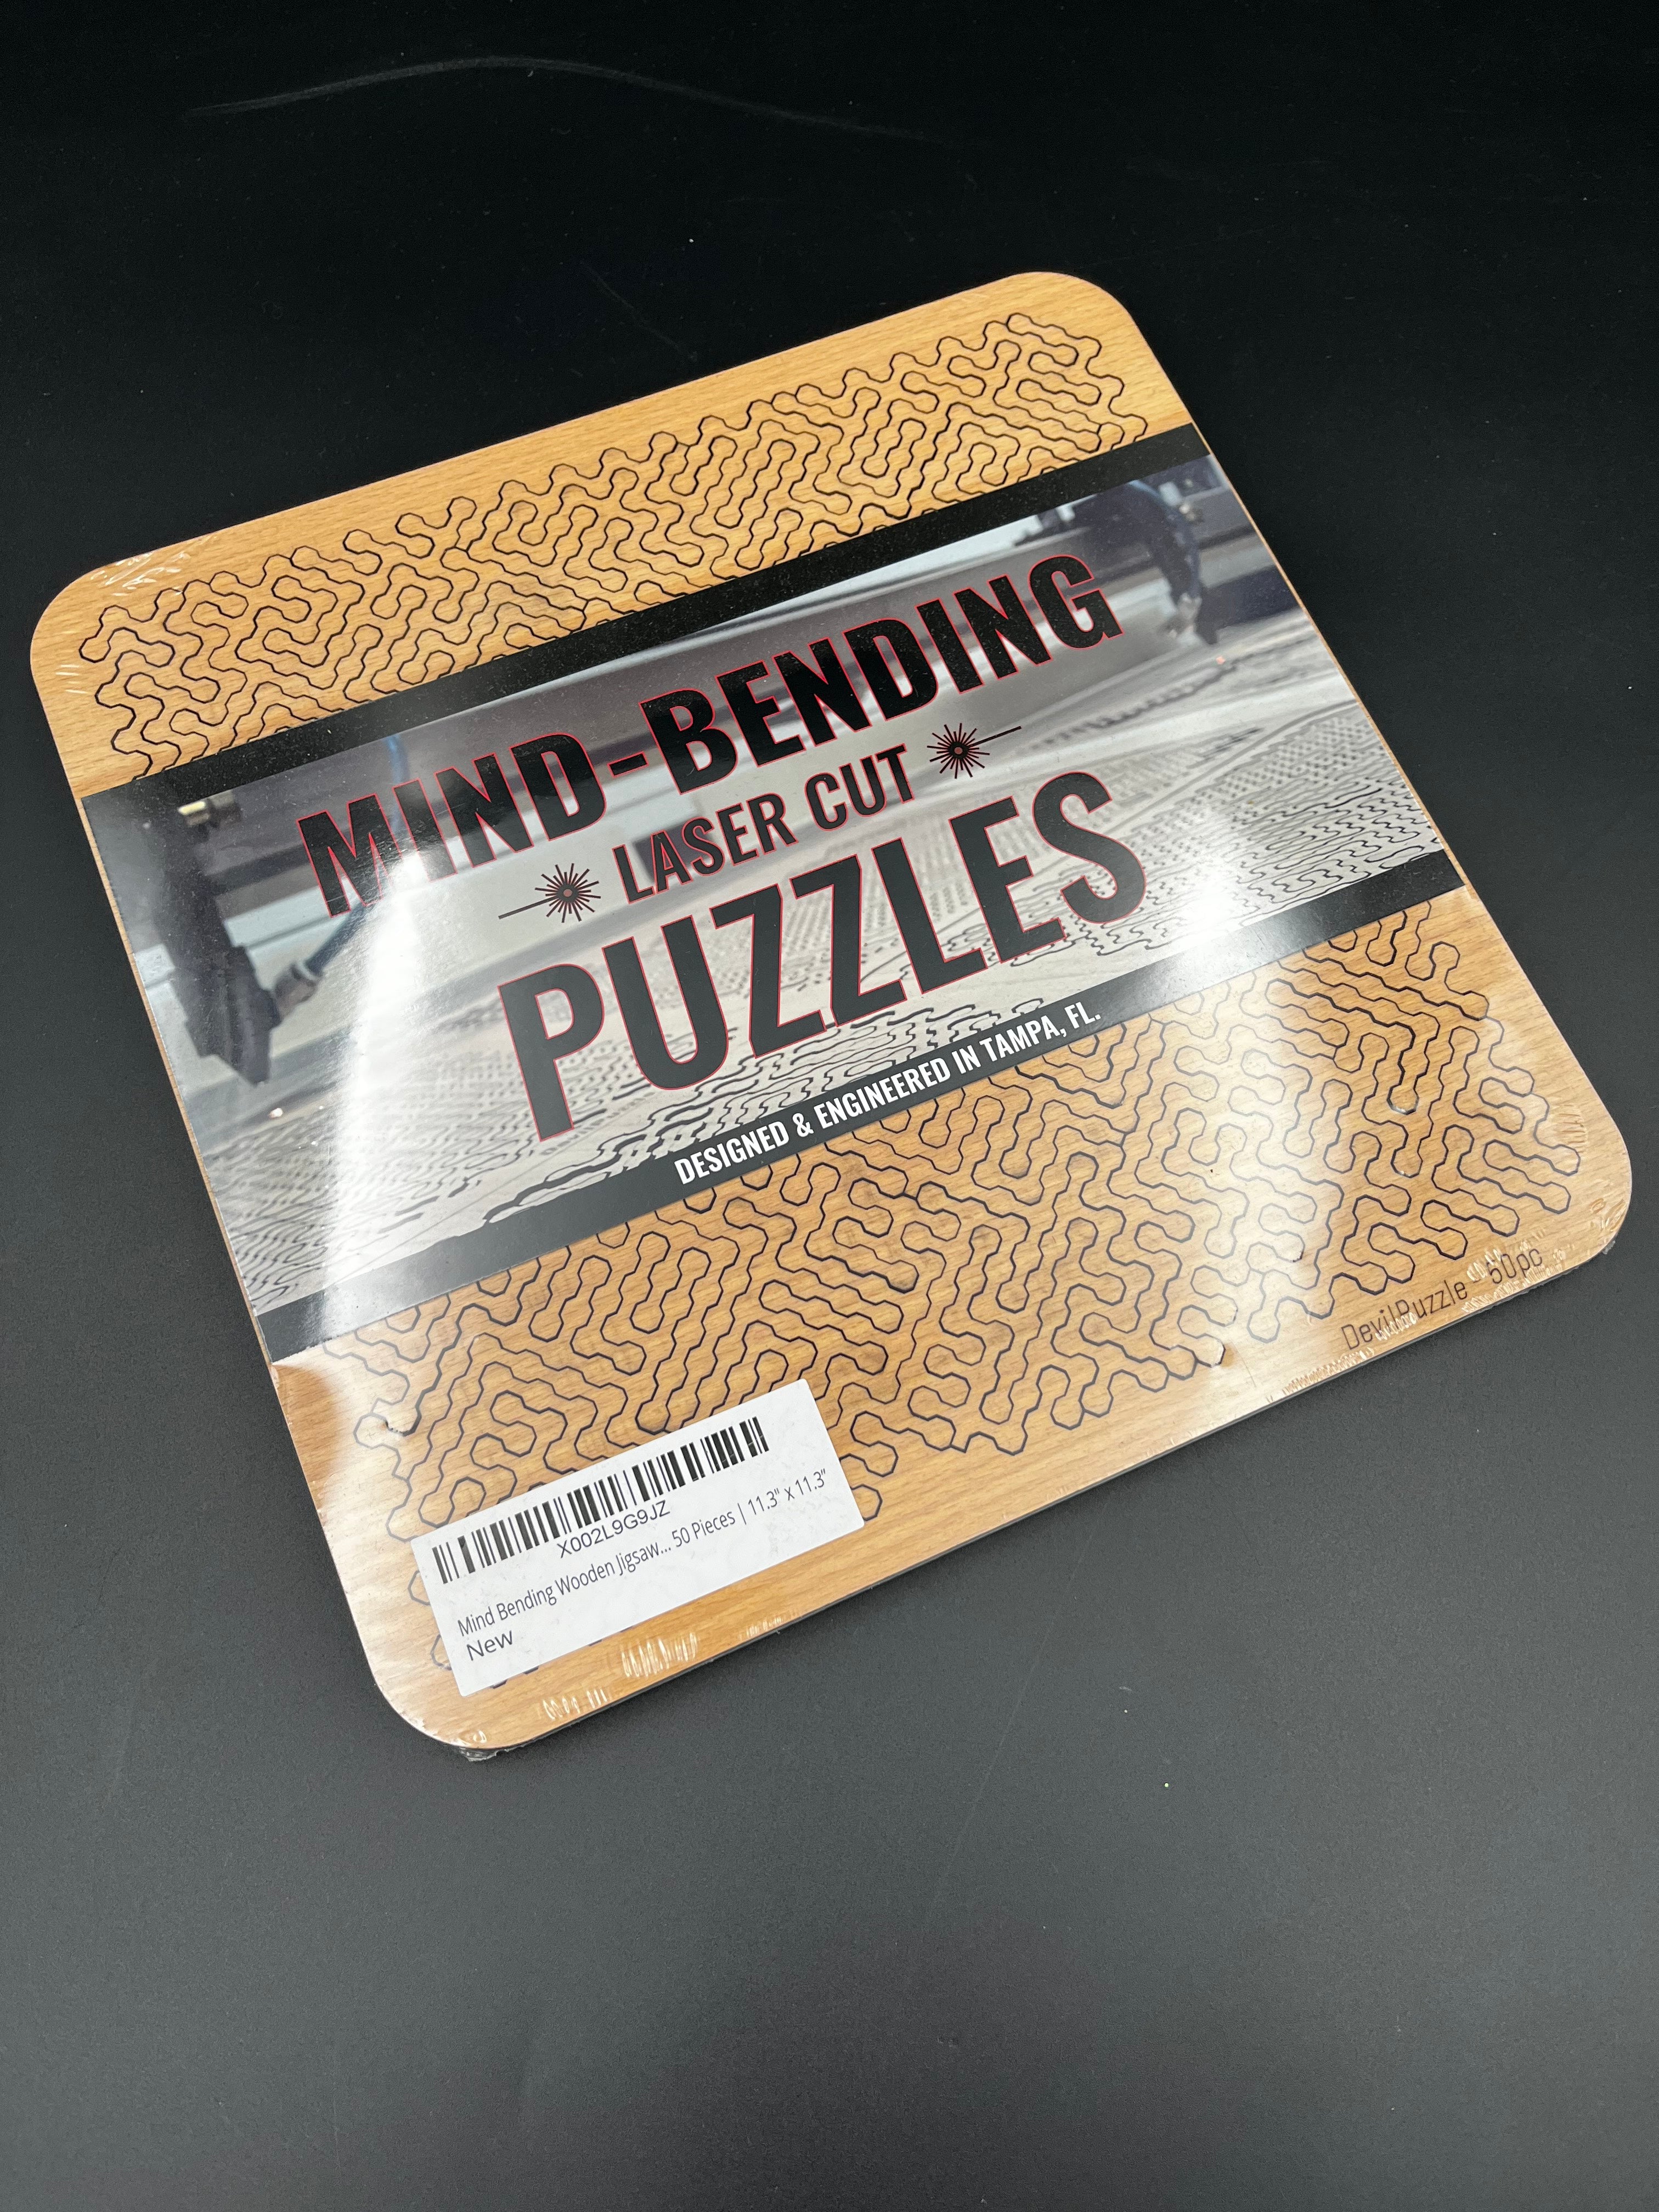 Mind-Bending Laser Cut Puzzles